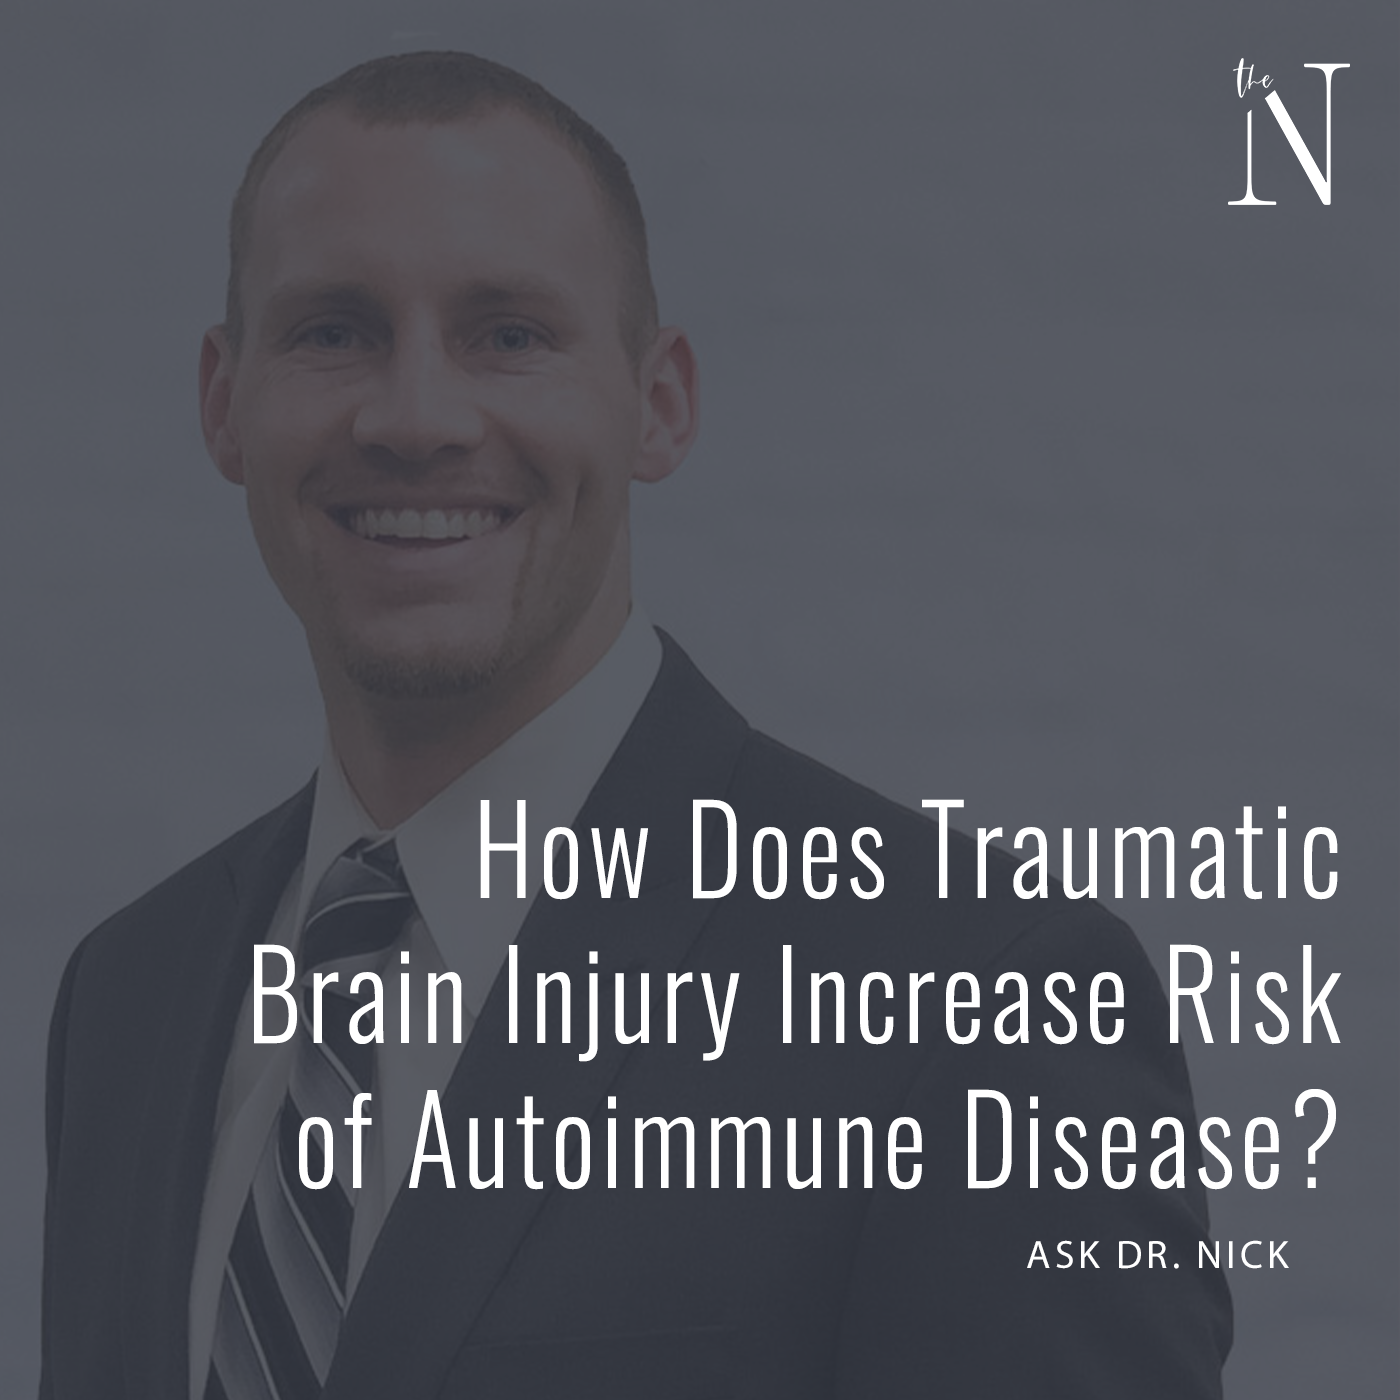 Risk of Autoimmune Disease